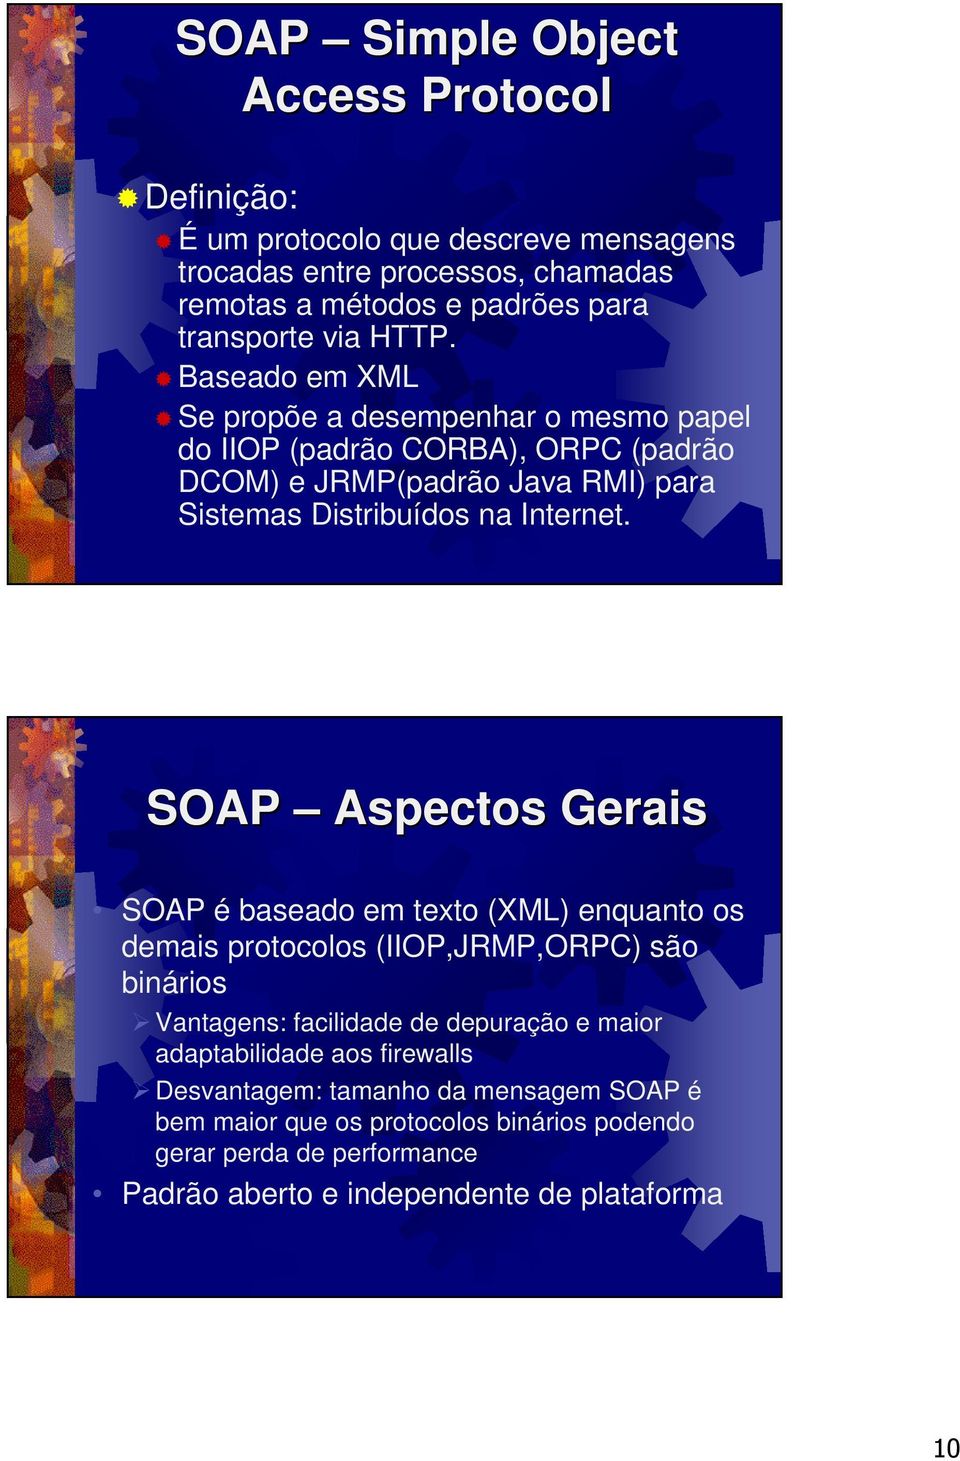 SOAP Aspectos Gerais SOAP é baseado em texto (XML) enquanto os demais protocolos (IIOP,JRMP,ORPC) são binários Vantagens: facilidade de depuração e maior